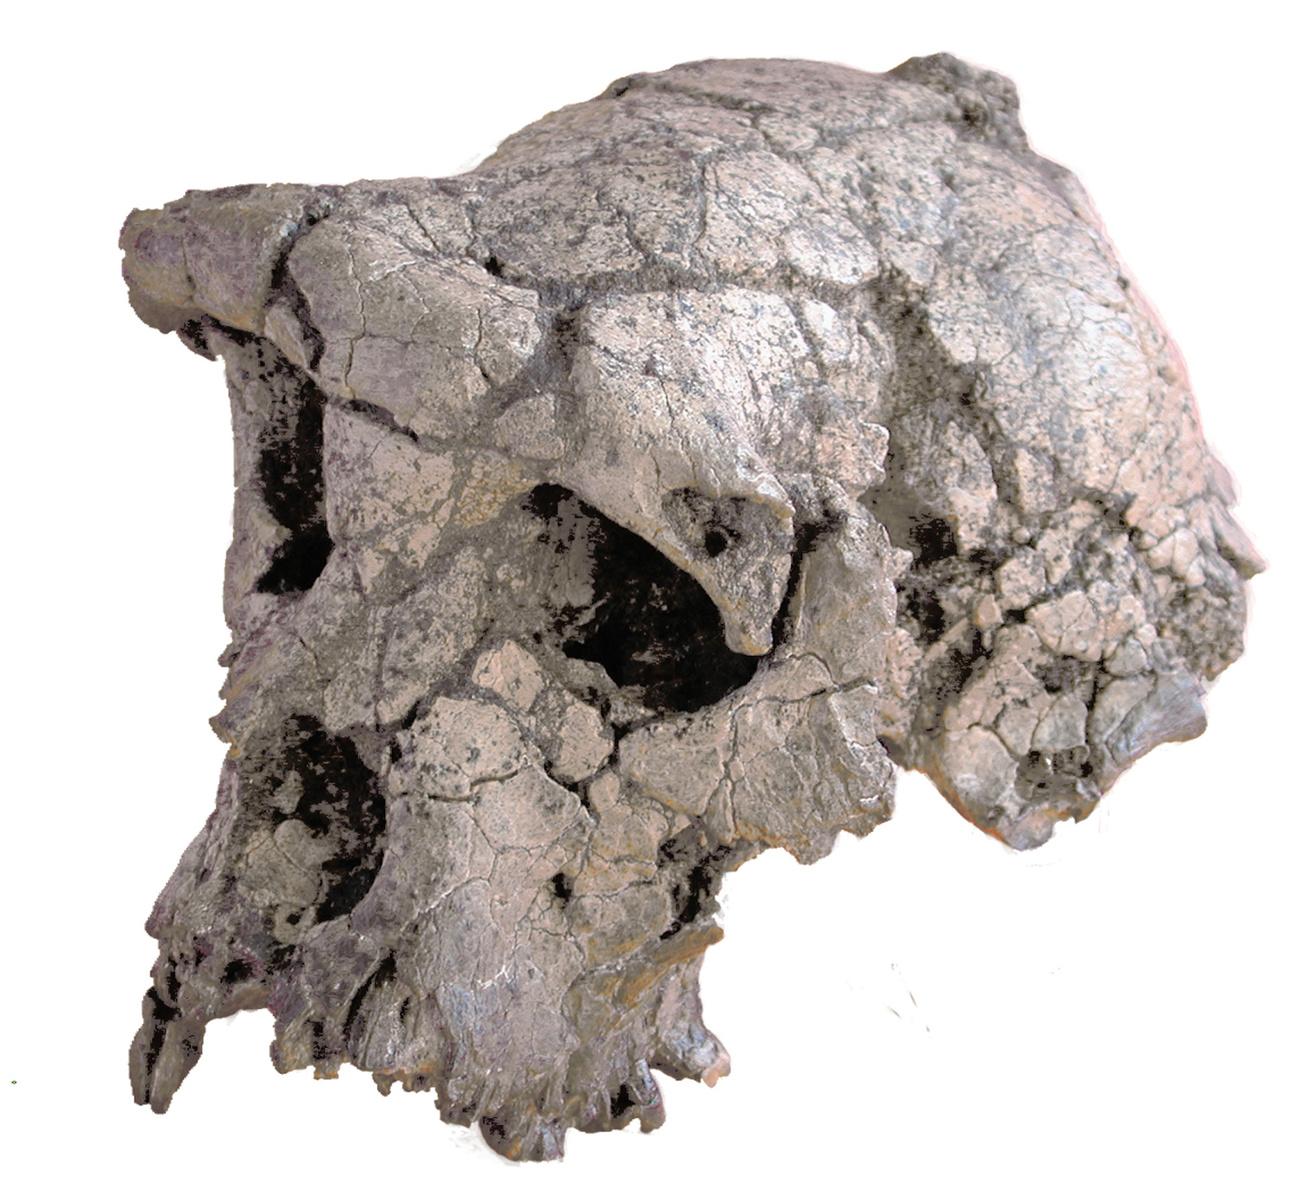 Le crâne de Toumaï – qui signifie "Espoir de vie" en langue gorane – a été découvert dans un désert aride du nord du Tchad, par le français Michel Brunet et son équipe, le 19 juillet 2001. Il a conduit à la définition d'une nouvelle espèce, Sahelanthropus tchadensis. [Keystone/AP photo - Nature]